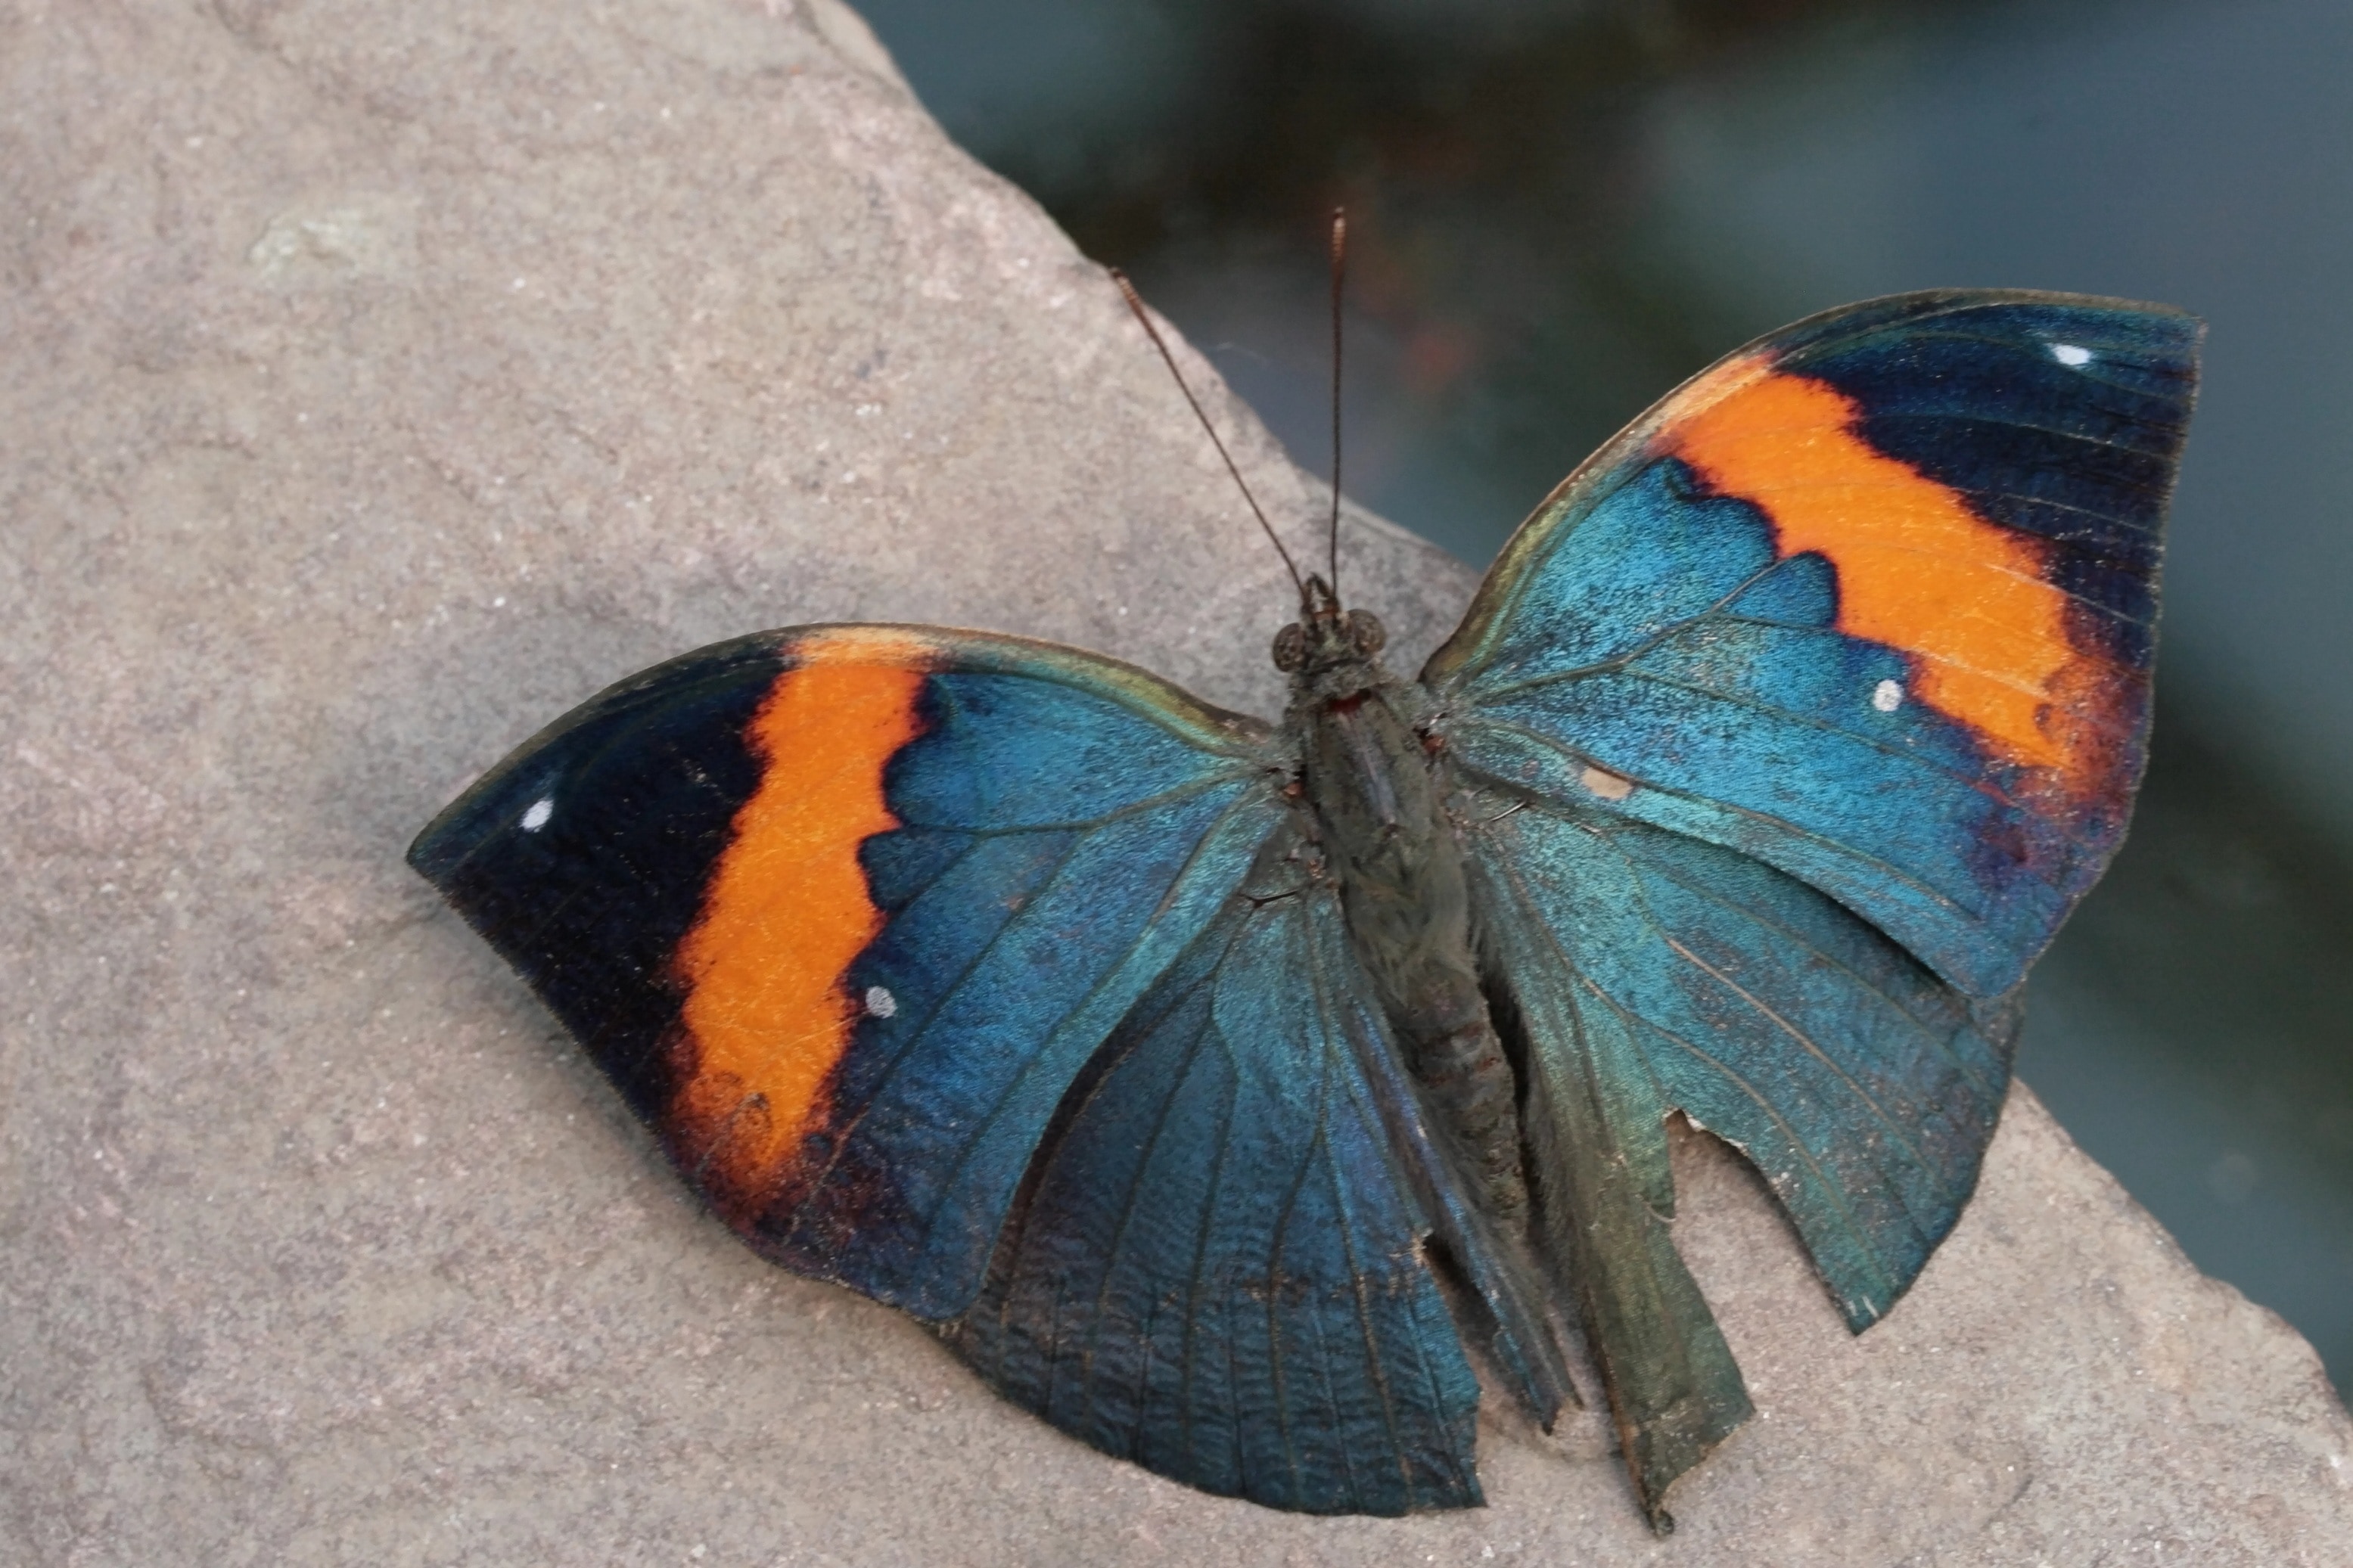 Разные крылья бабочек. Бабочка kallima inachus. Палос Вердес синий бабочка. Бабочка голубая с оранжевым. Крылья бабочки.